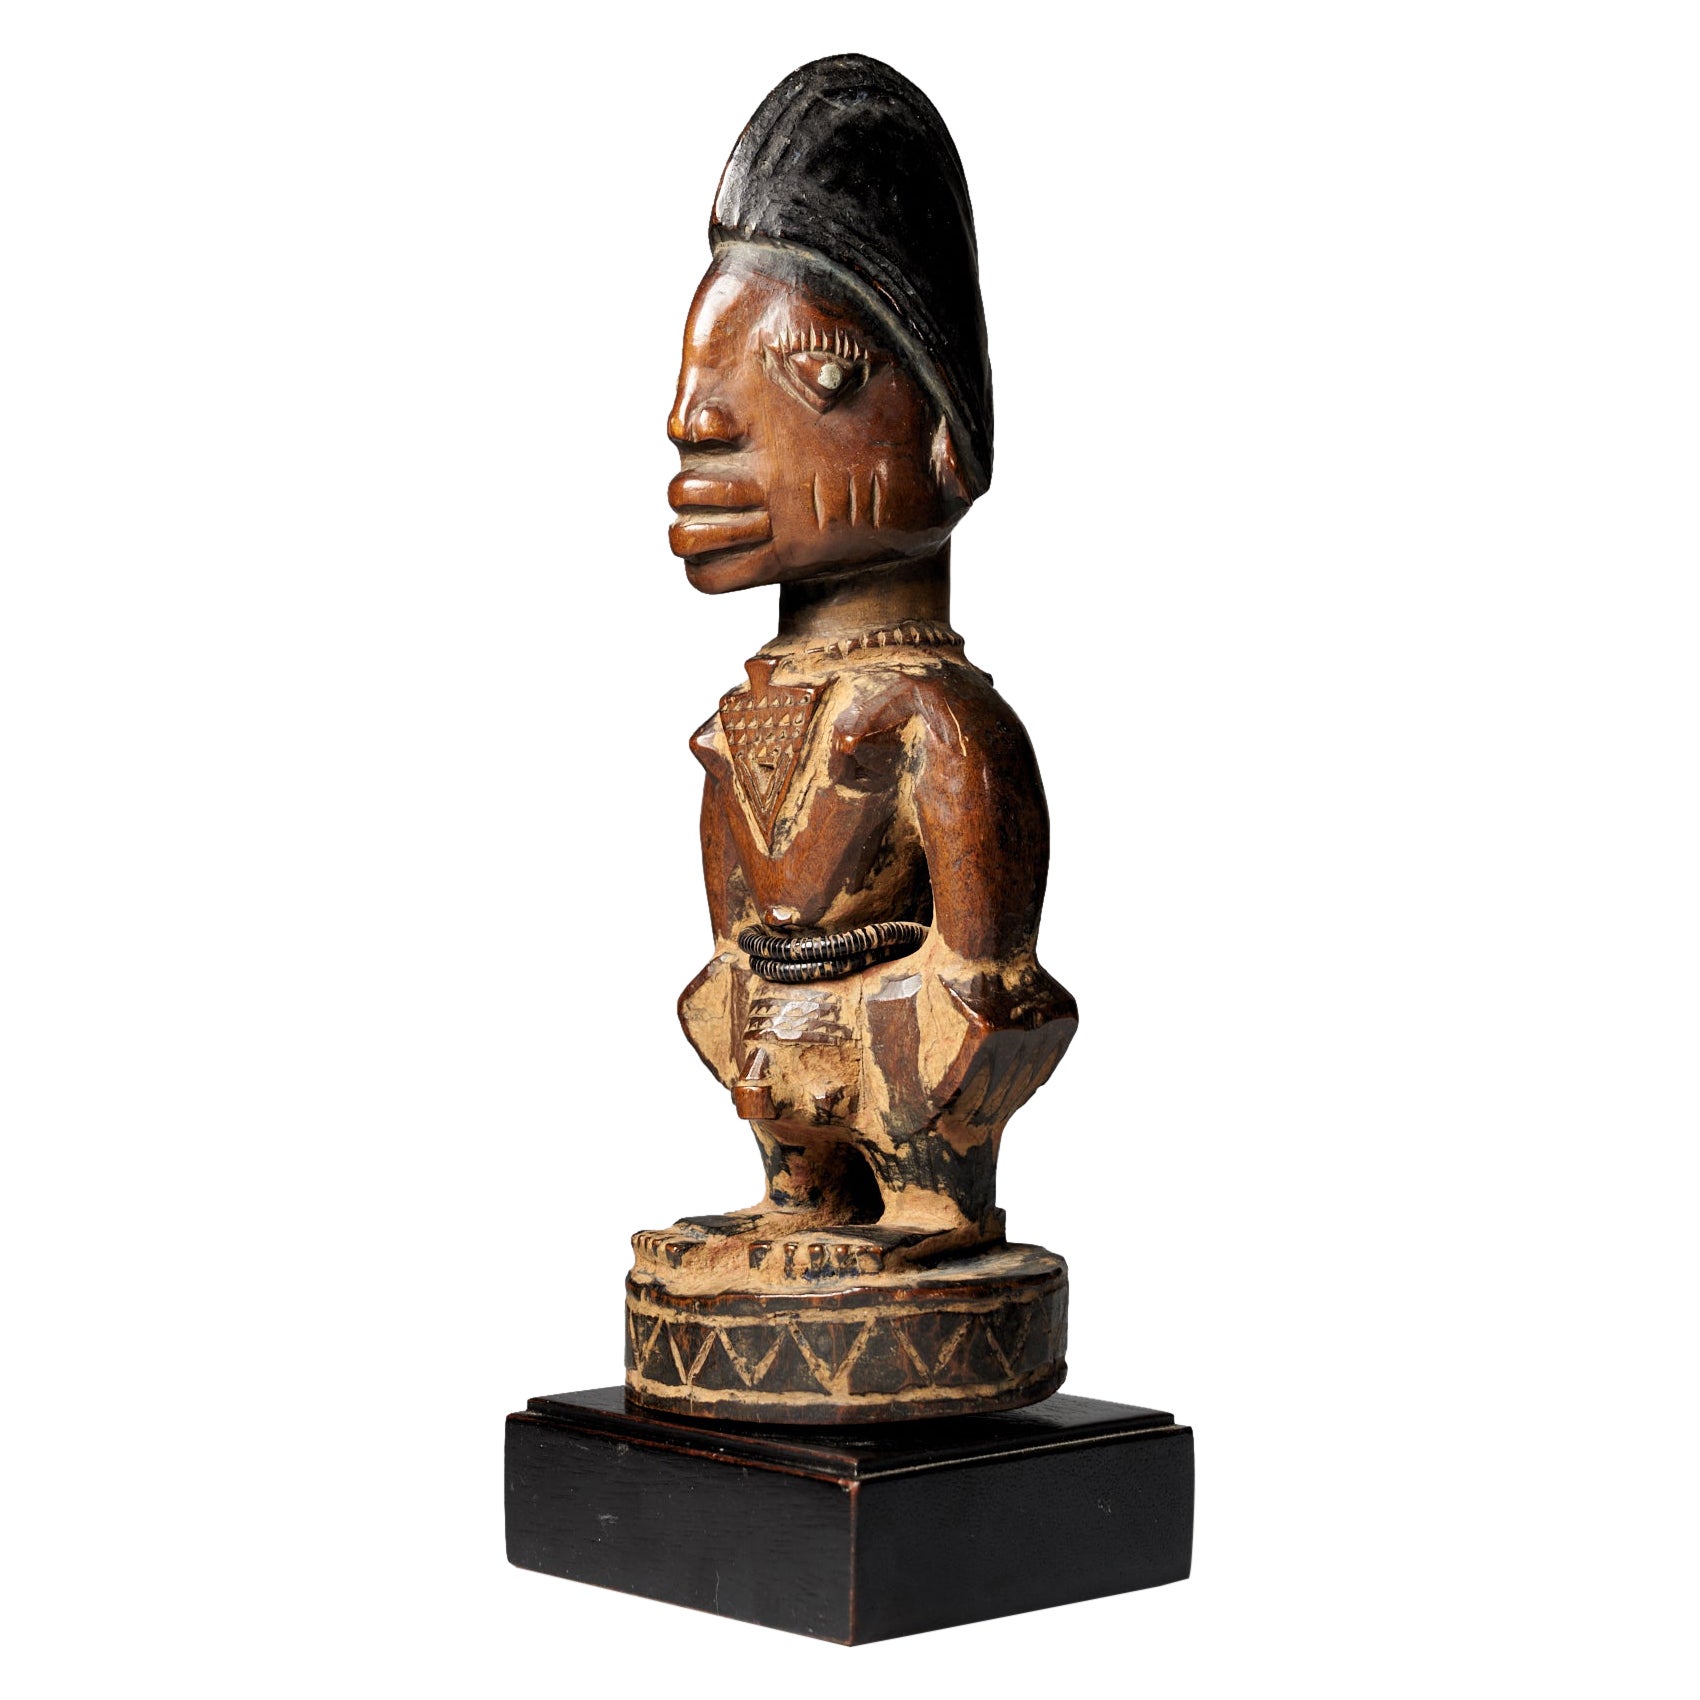 Carved Twin figure Ibeji Yoruba People, Nigeria